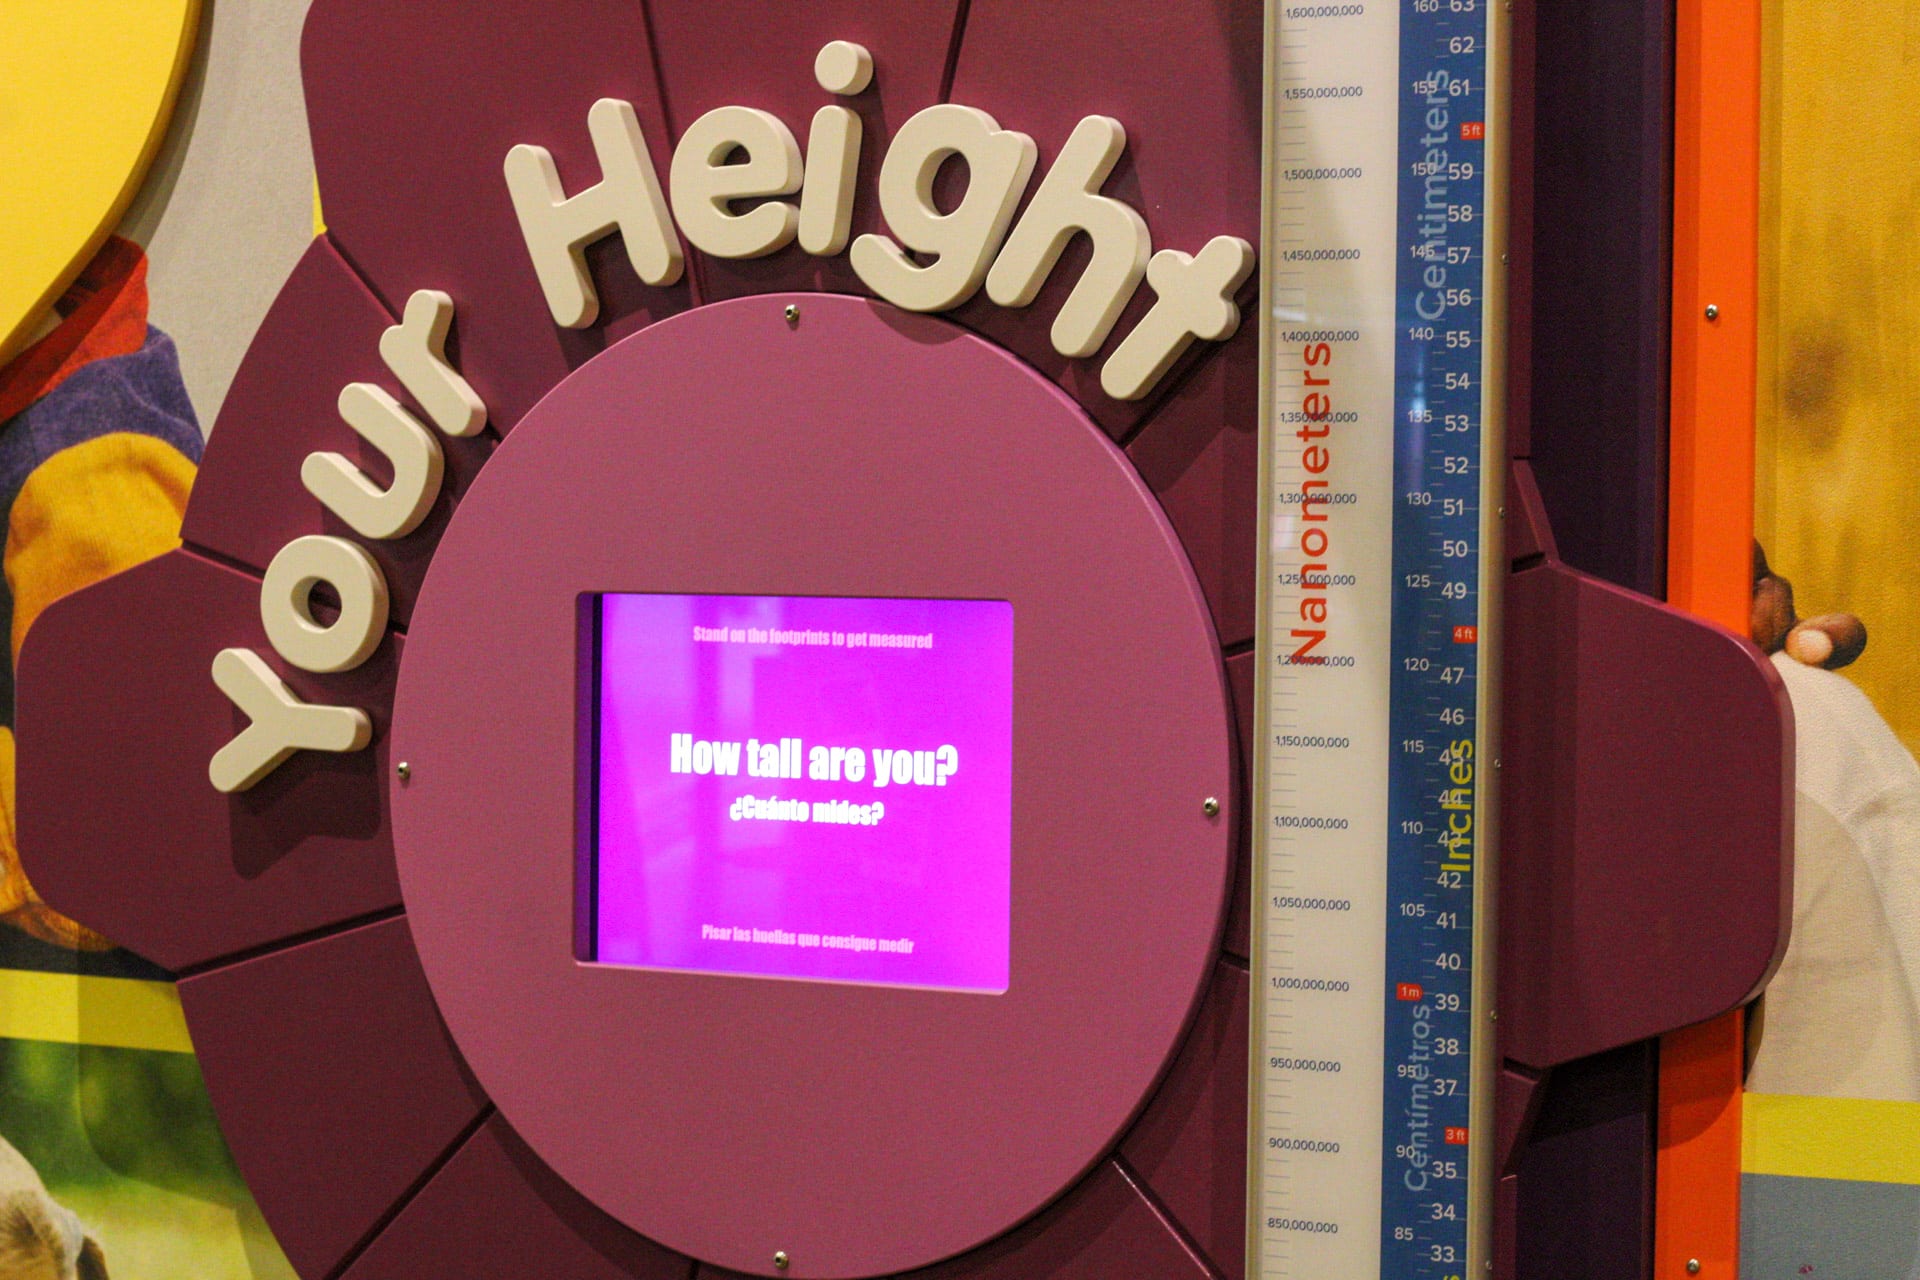 Height measurement exhibit.